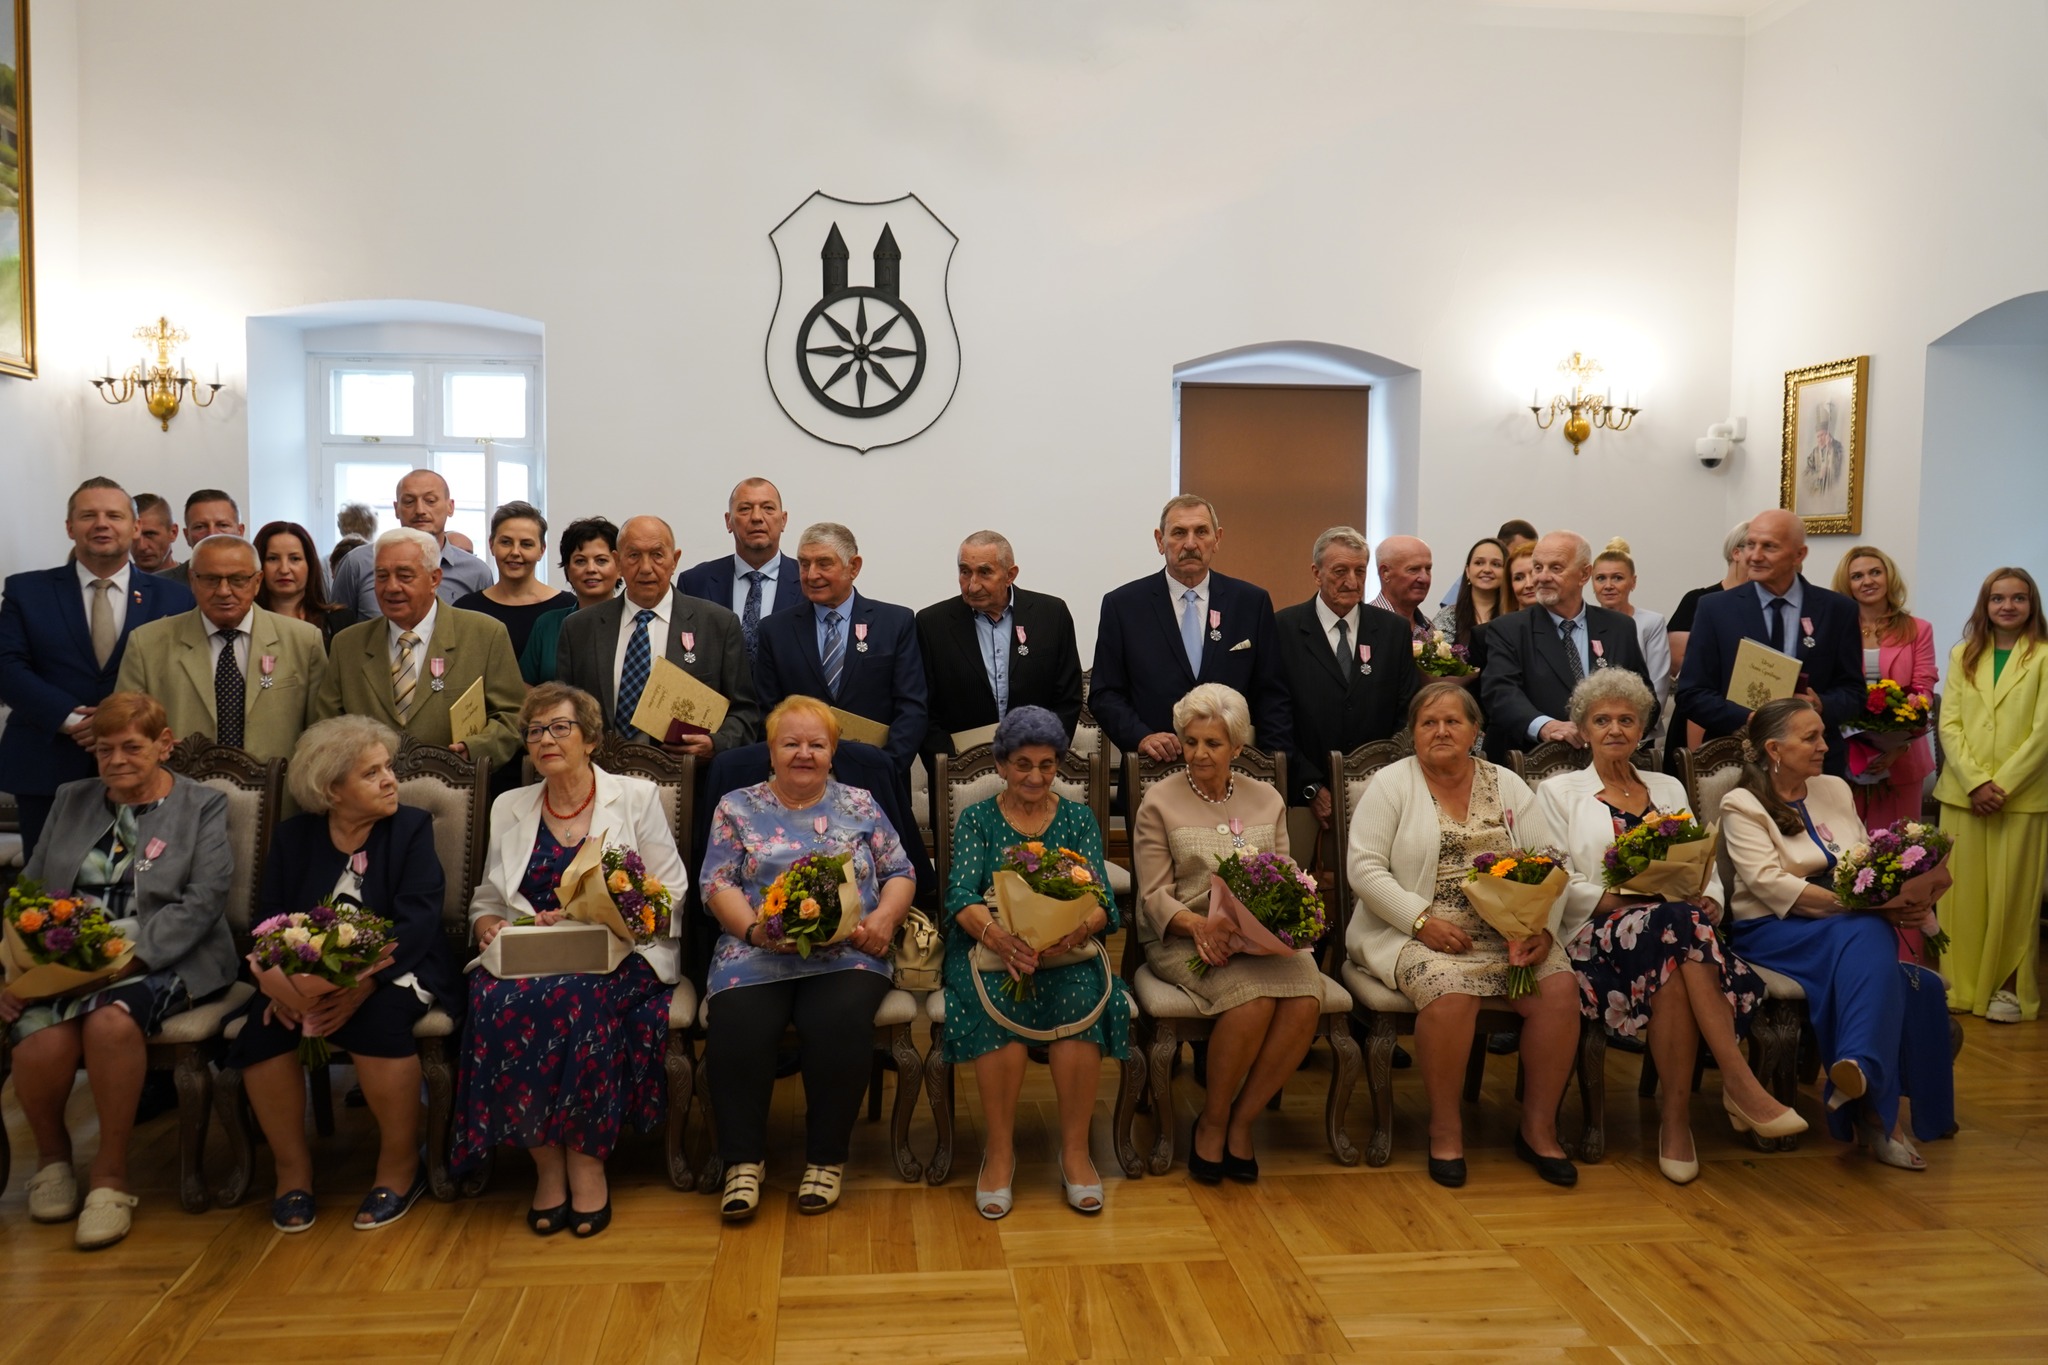 Burmistrz Koła Krzysztof Witkowski z Jubilatami 50-lecia pożycia małżeńskiego w sali sesyjnej Ratusz